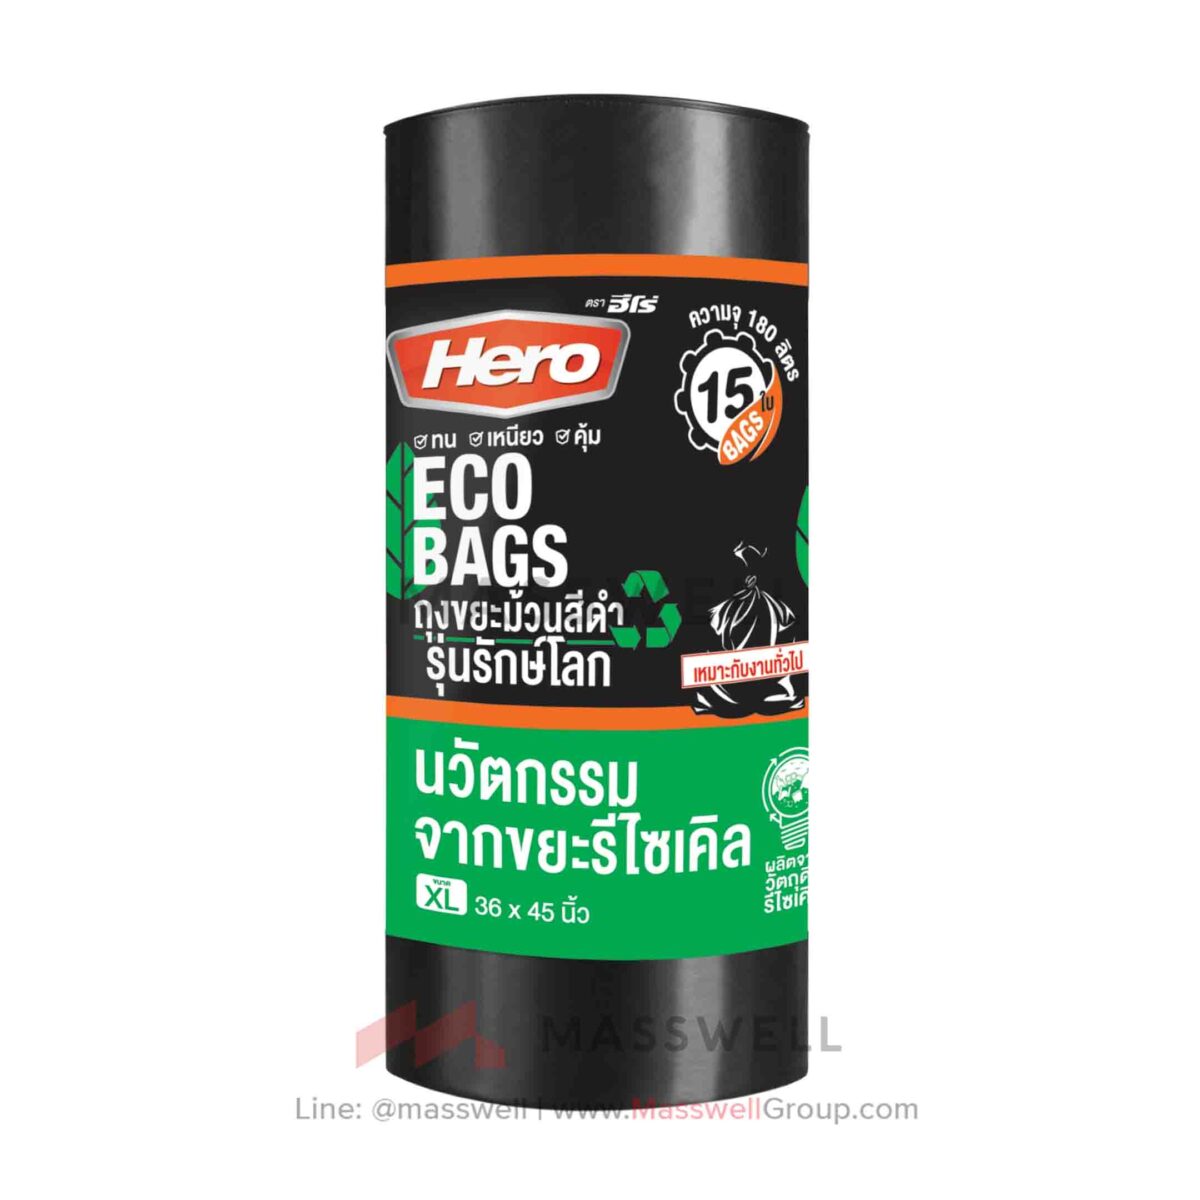 ถุงขยะม้วน รุ่นรักษ์โลก ECO สีดำ ขนาด 36 x 45 นิ้ว (15ใบ)